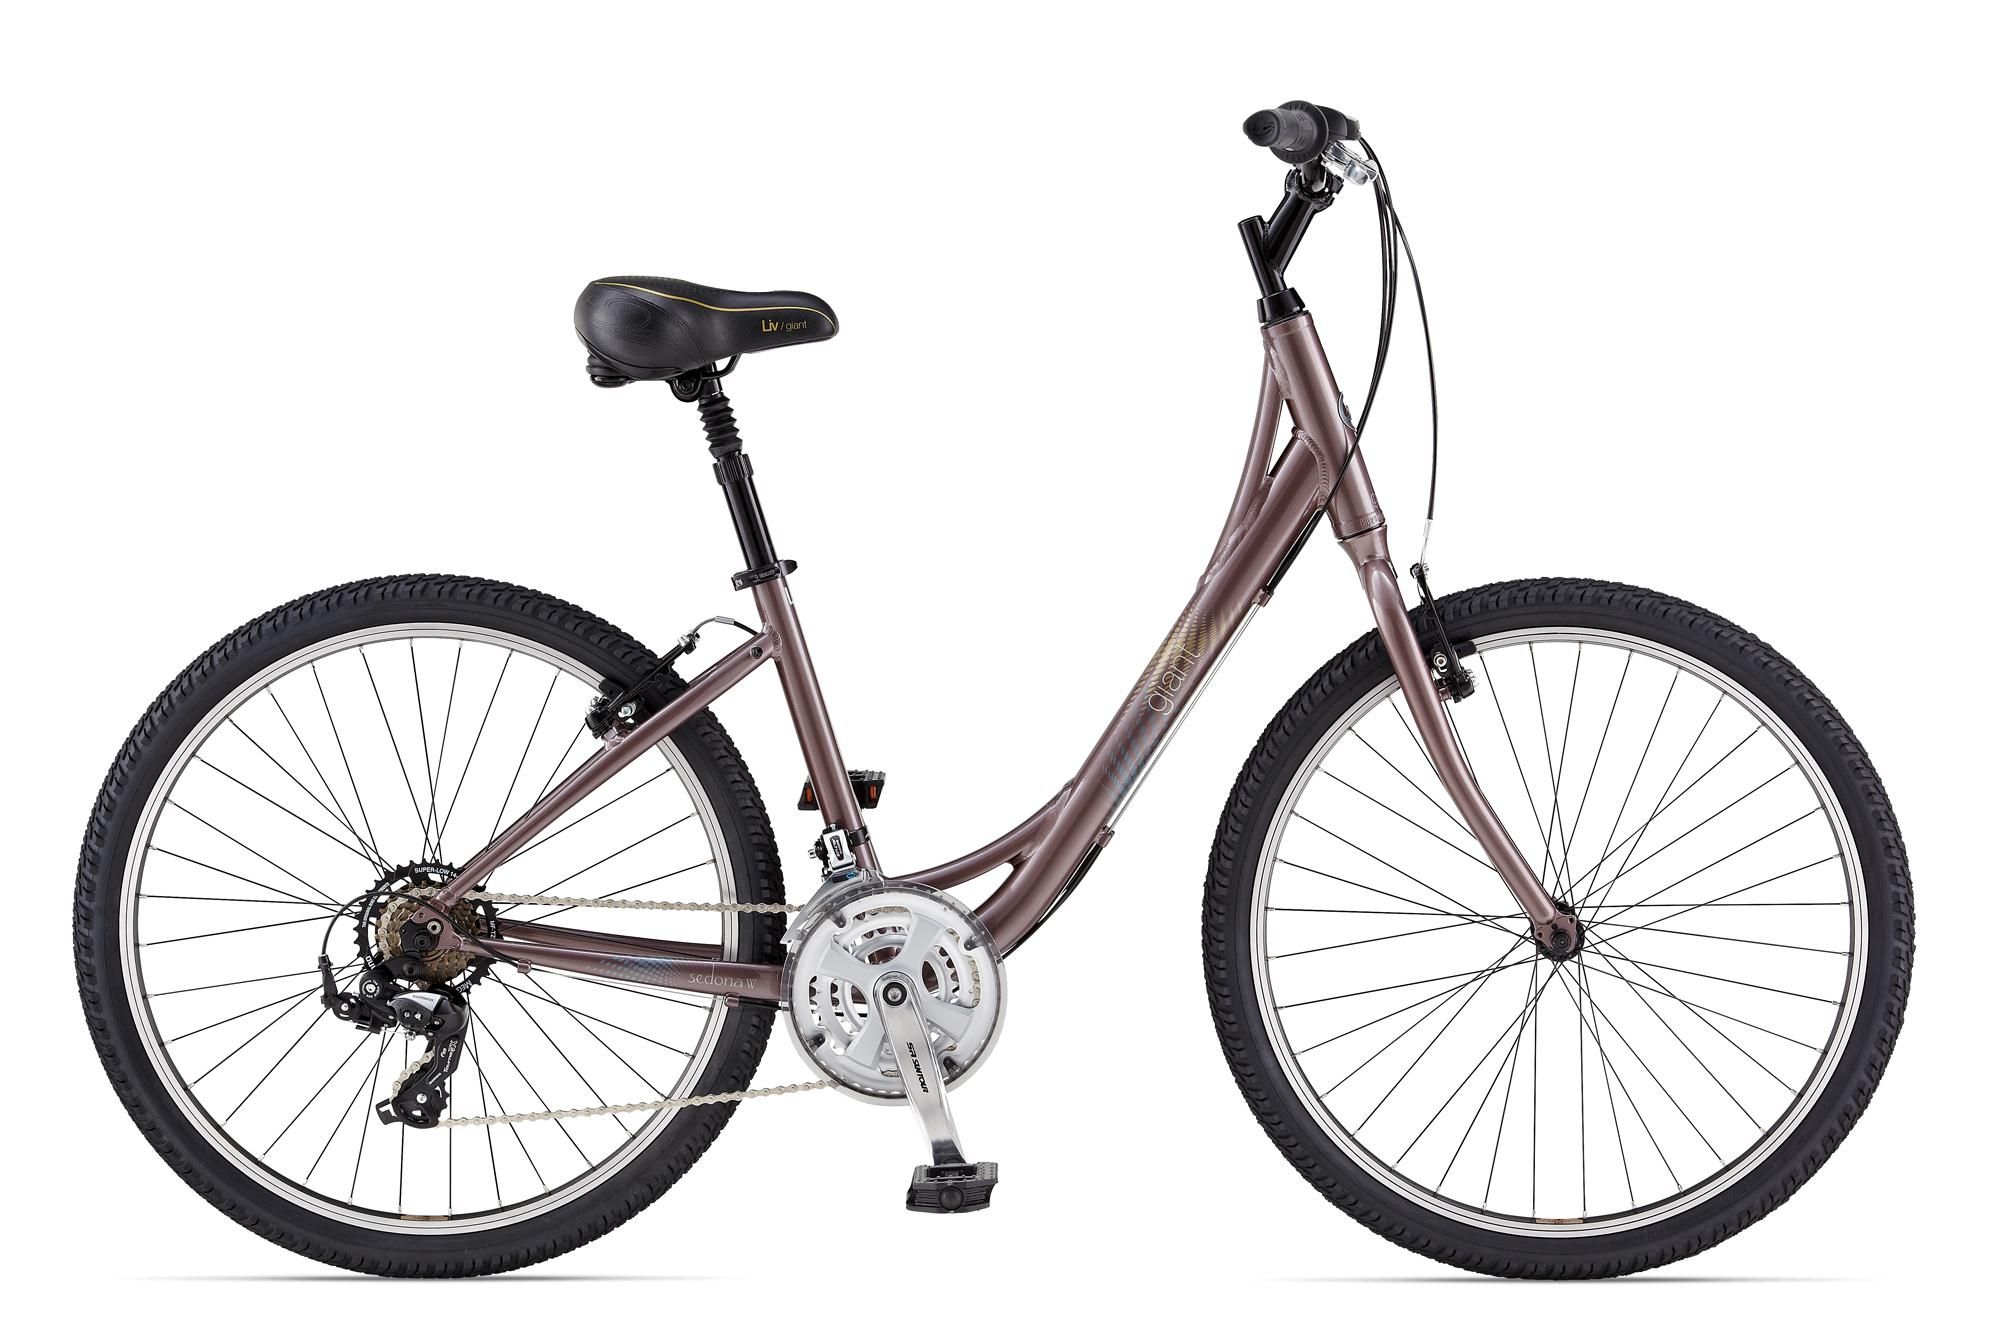  Отзывы о Женском велосипеде Giant Sedona W 2014